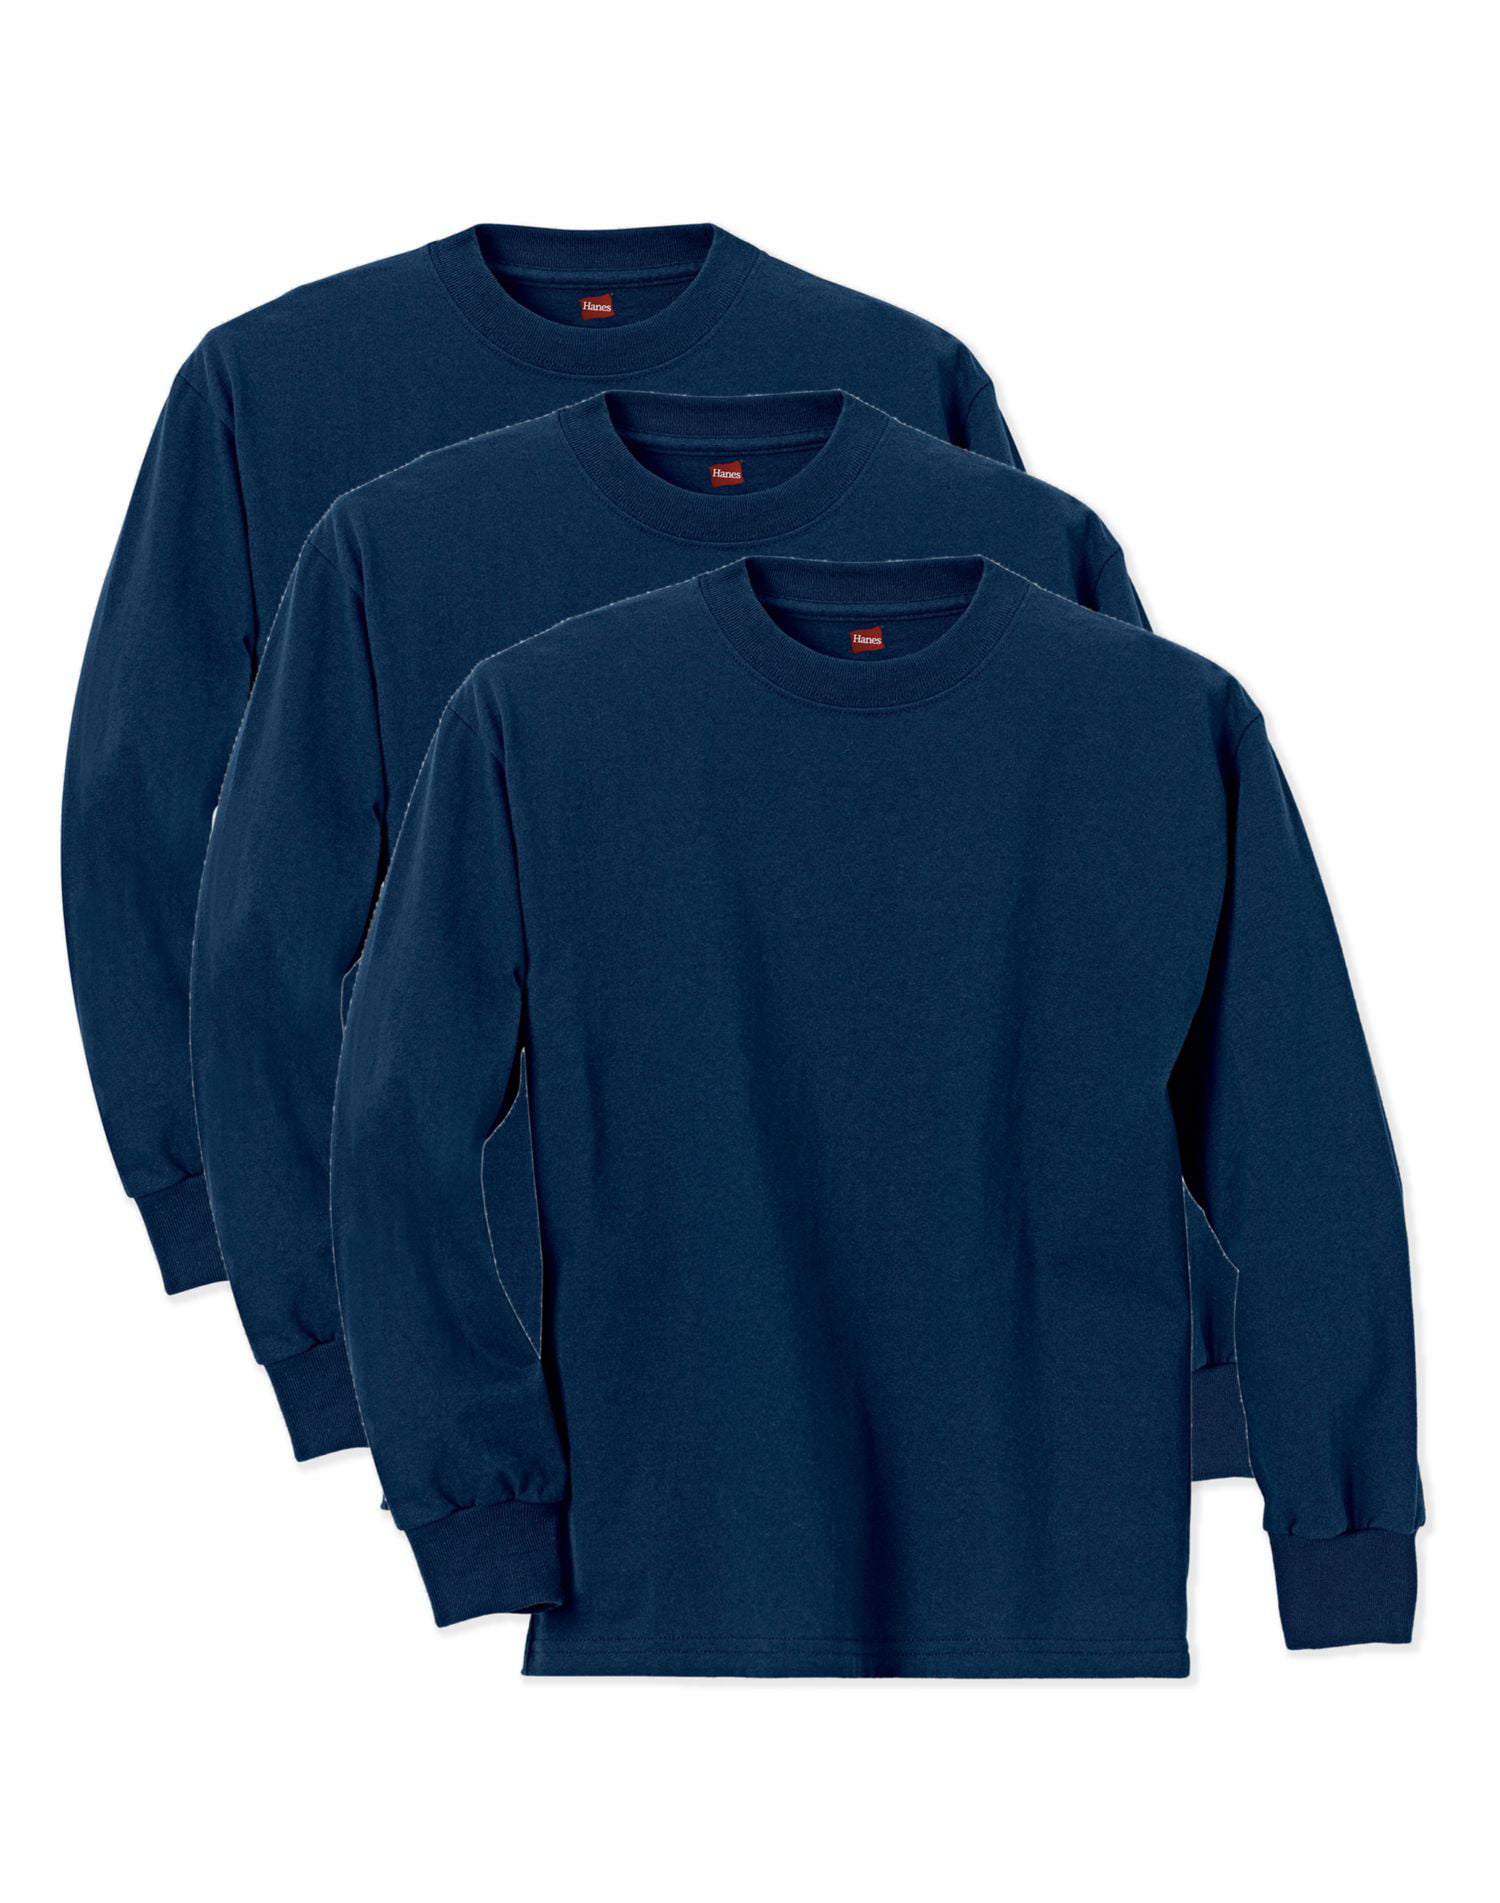 Hanes L- Select SZ/Color. Boys 8-20 Big ComfortSoft T-Shirt Pack of 6 